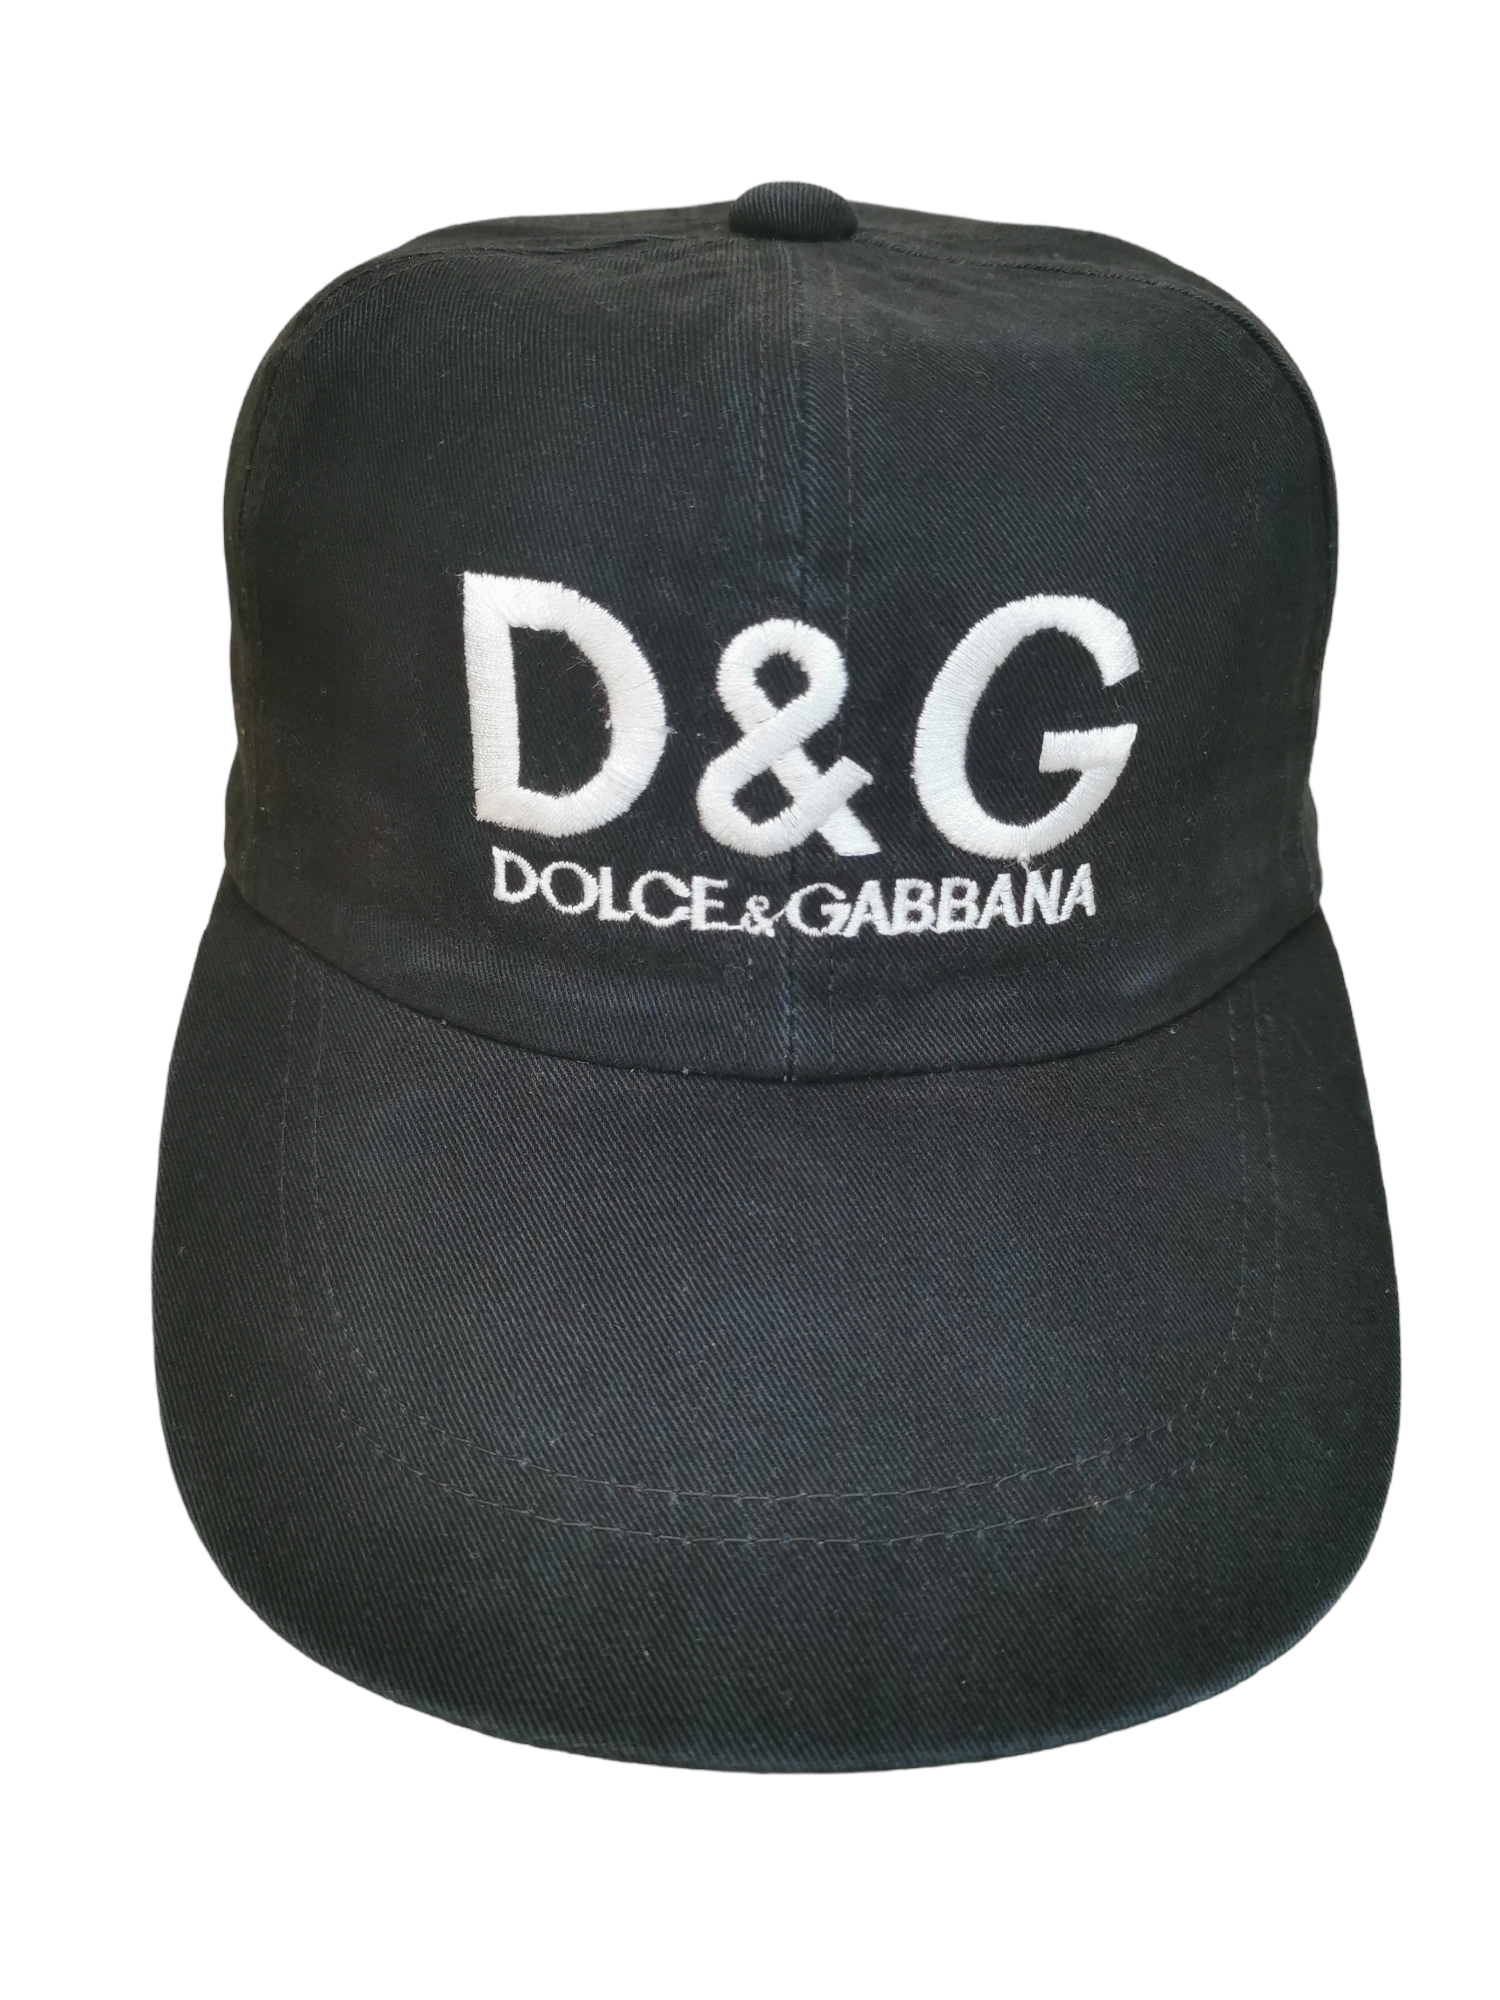 VINTAGE DOLCE & GABBANA LUXURY HAT CAP - 1